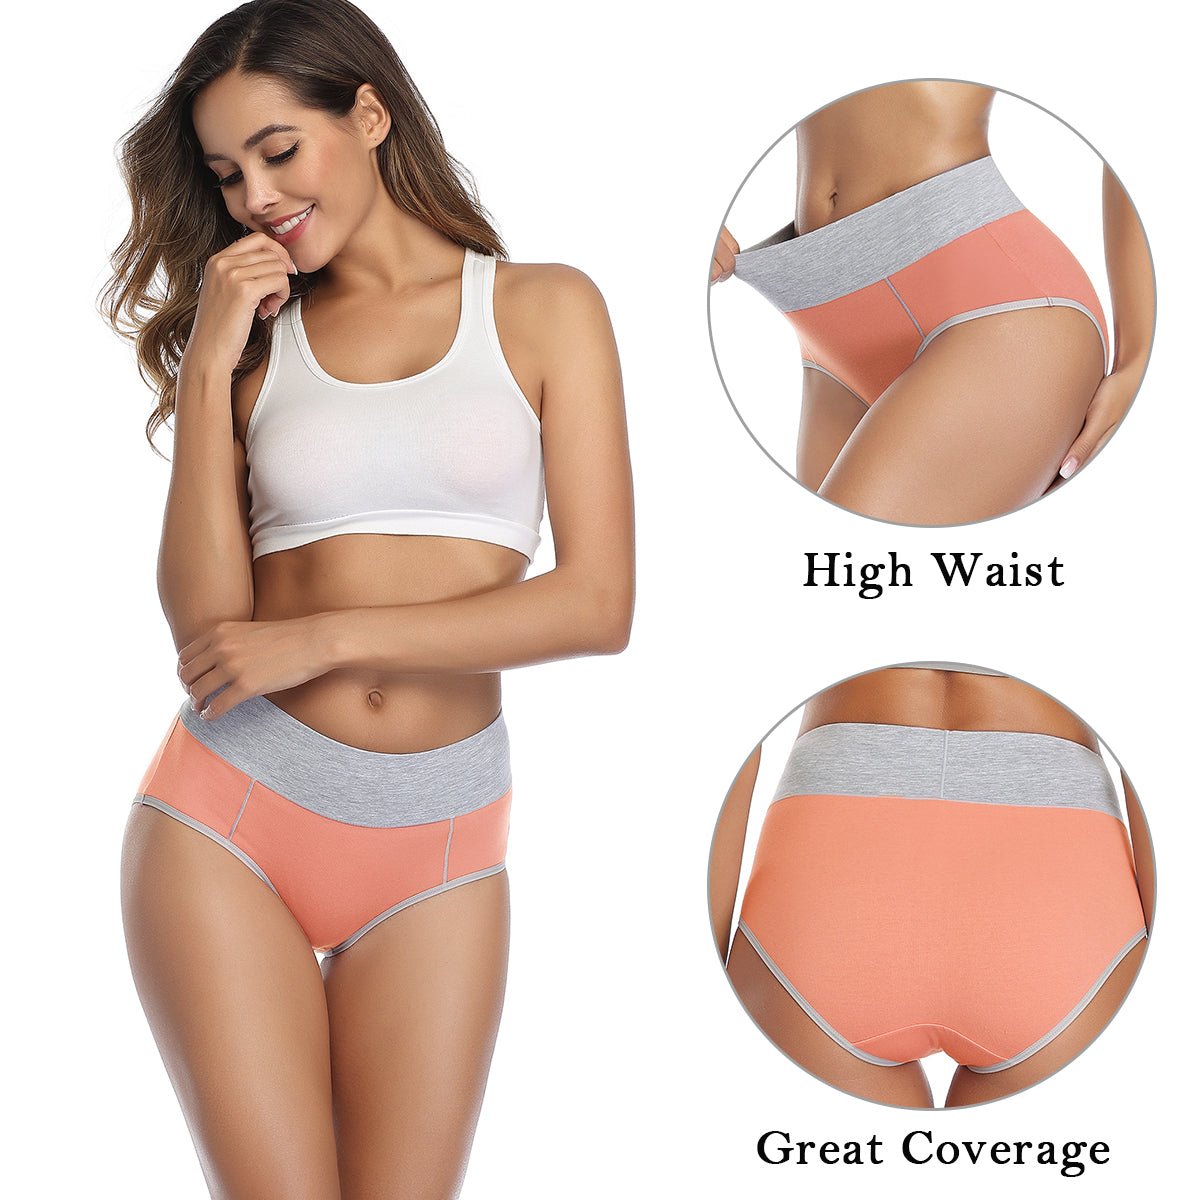 wirarpa Women’s High Waisted Cotton Briefs Underwear 5 Pack